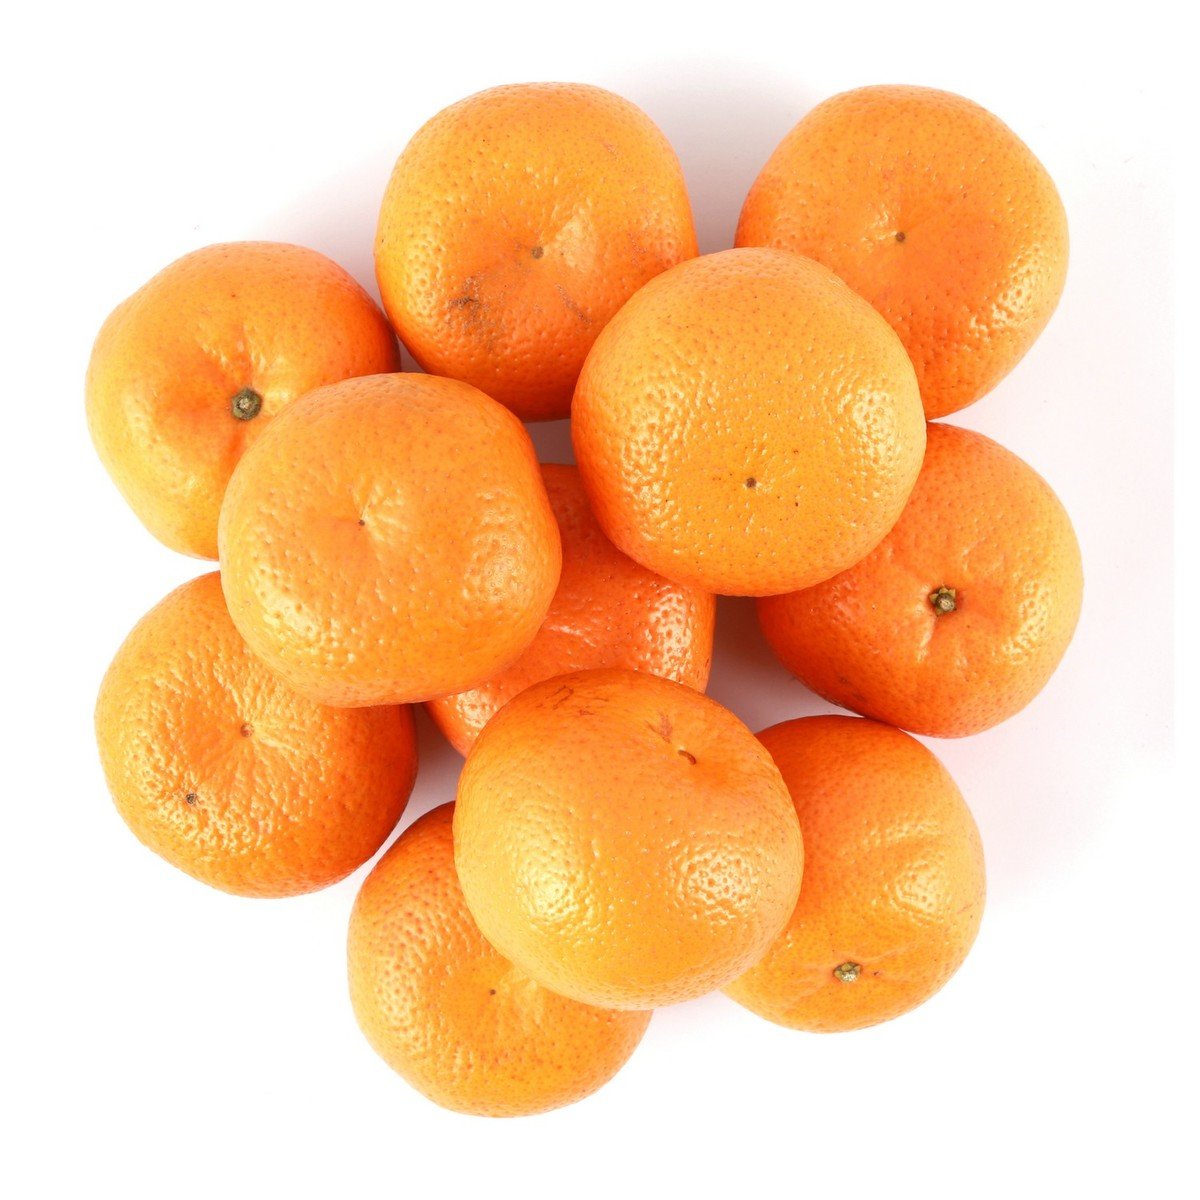 Mandarin India 1kg Online at Best Price | Citrus Fruits | Lulu UAE